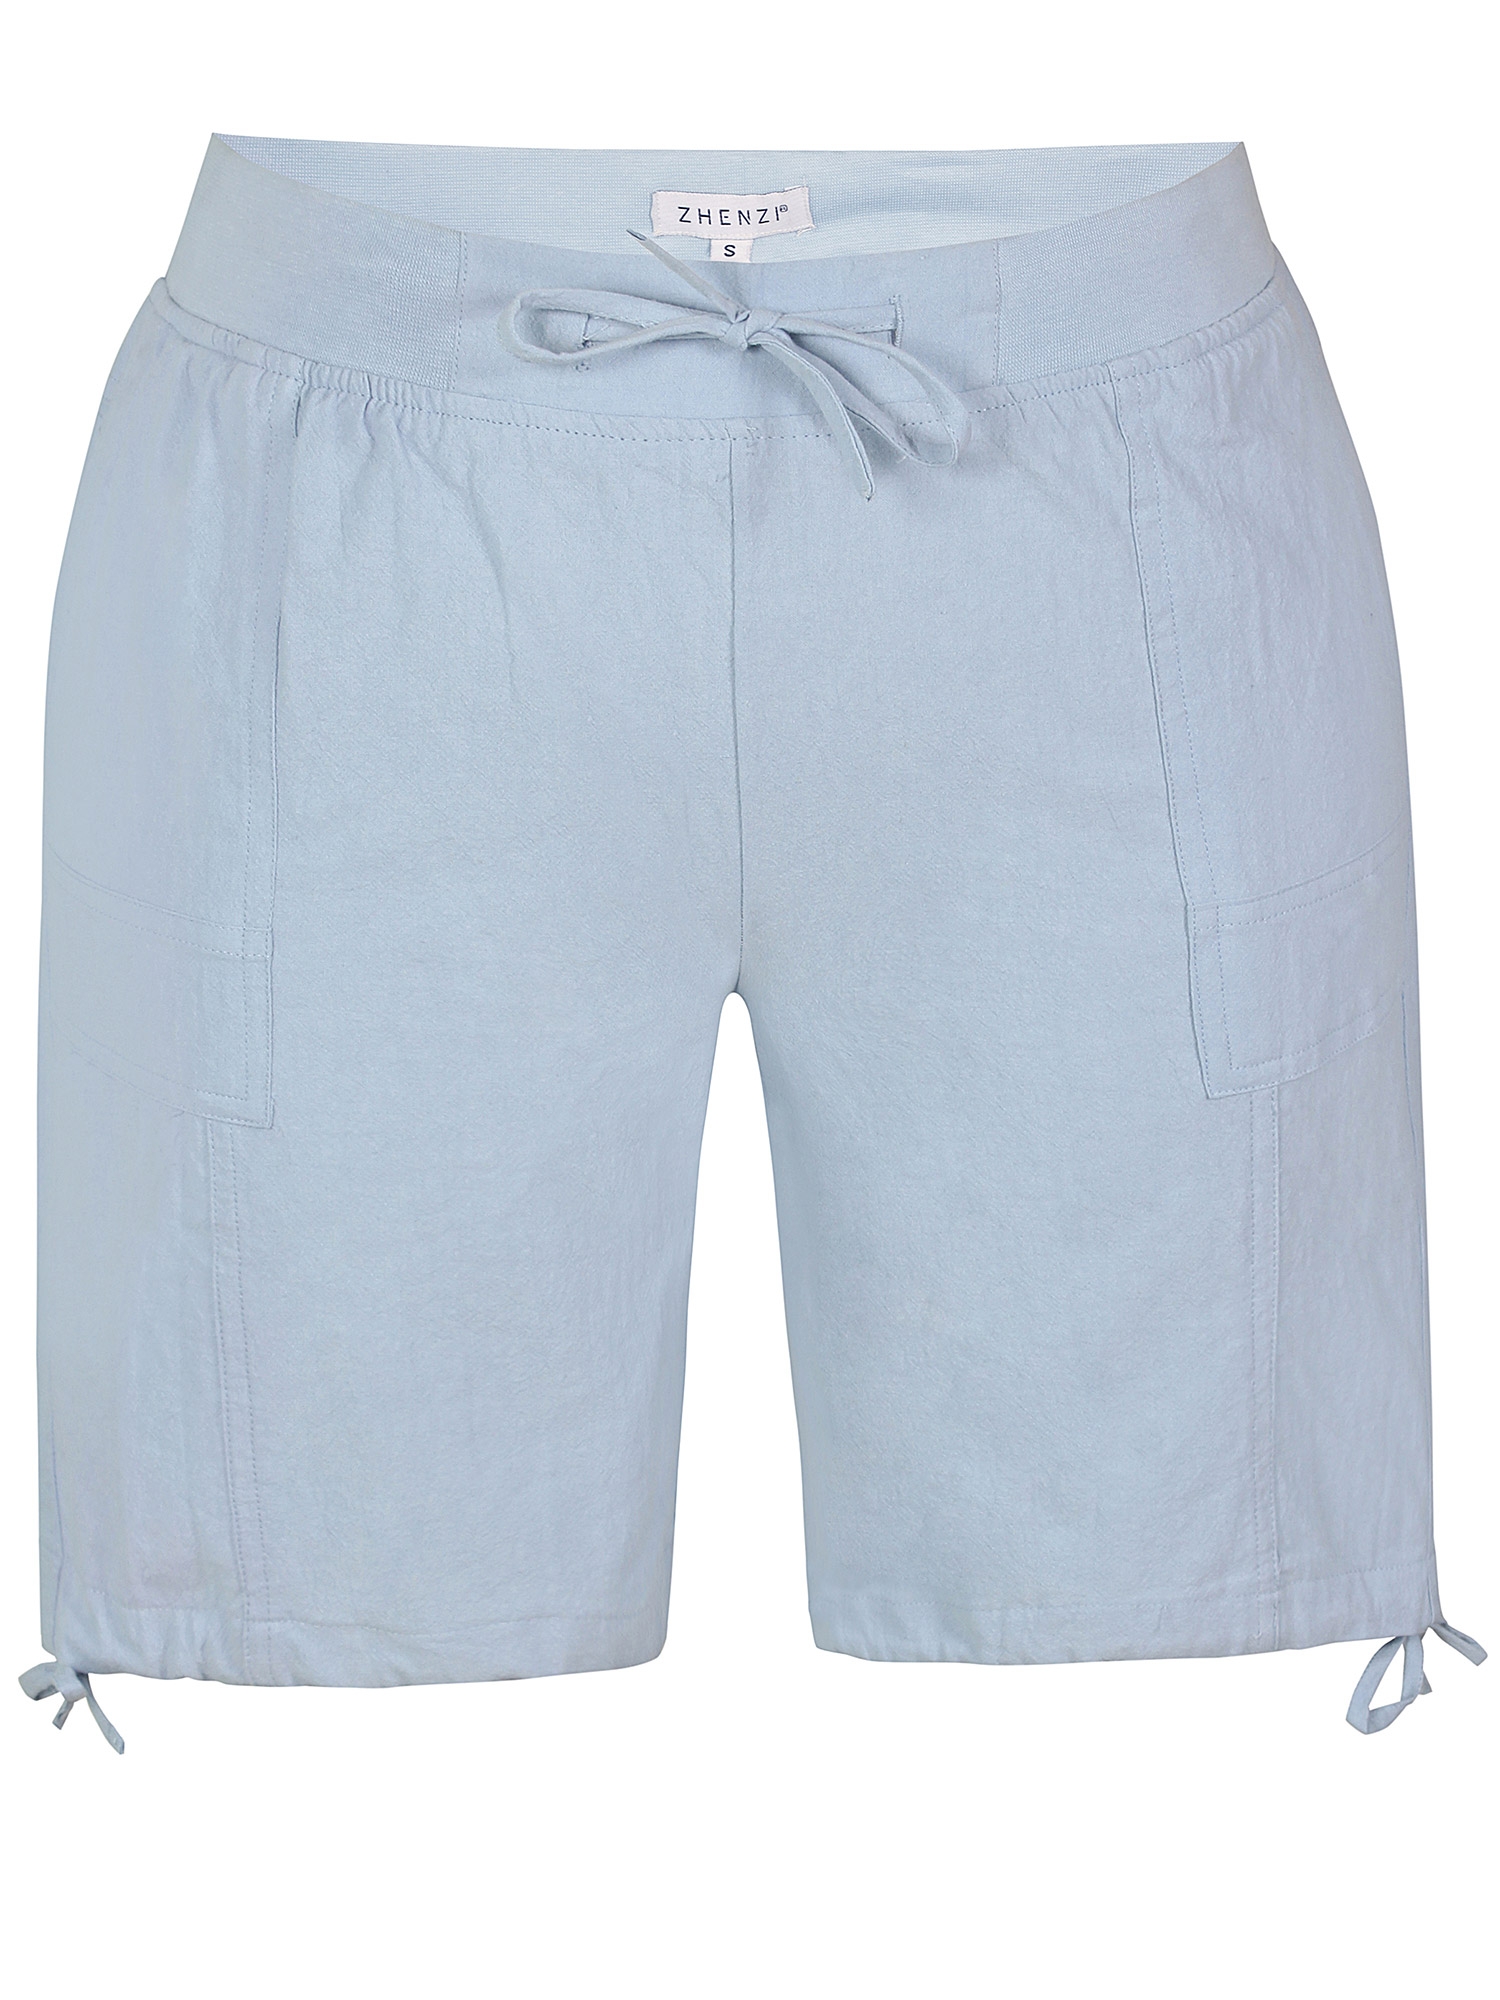 Amin - Lekre lyseblå bomulls shorts fra Zhenzi